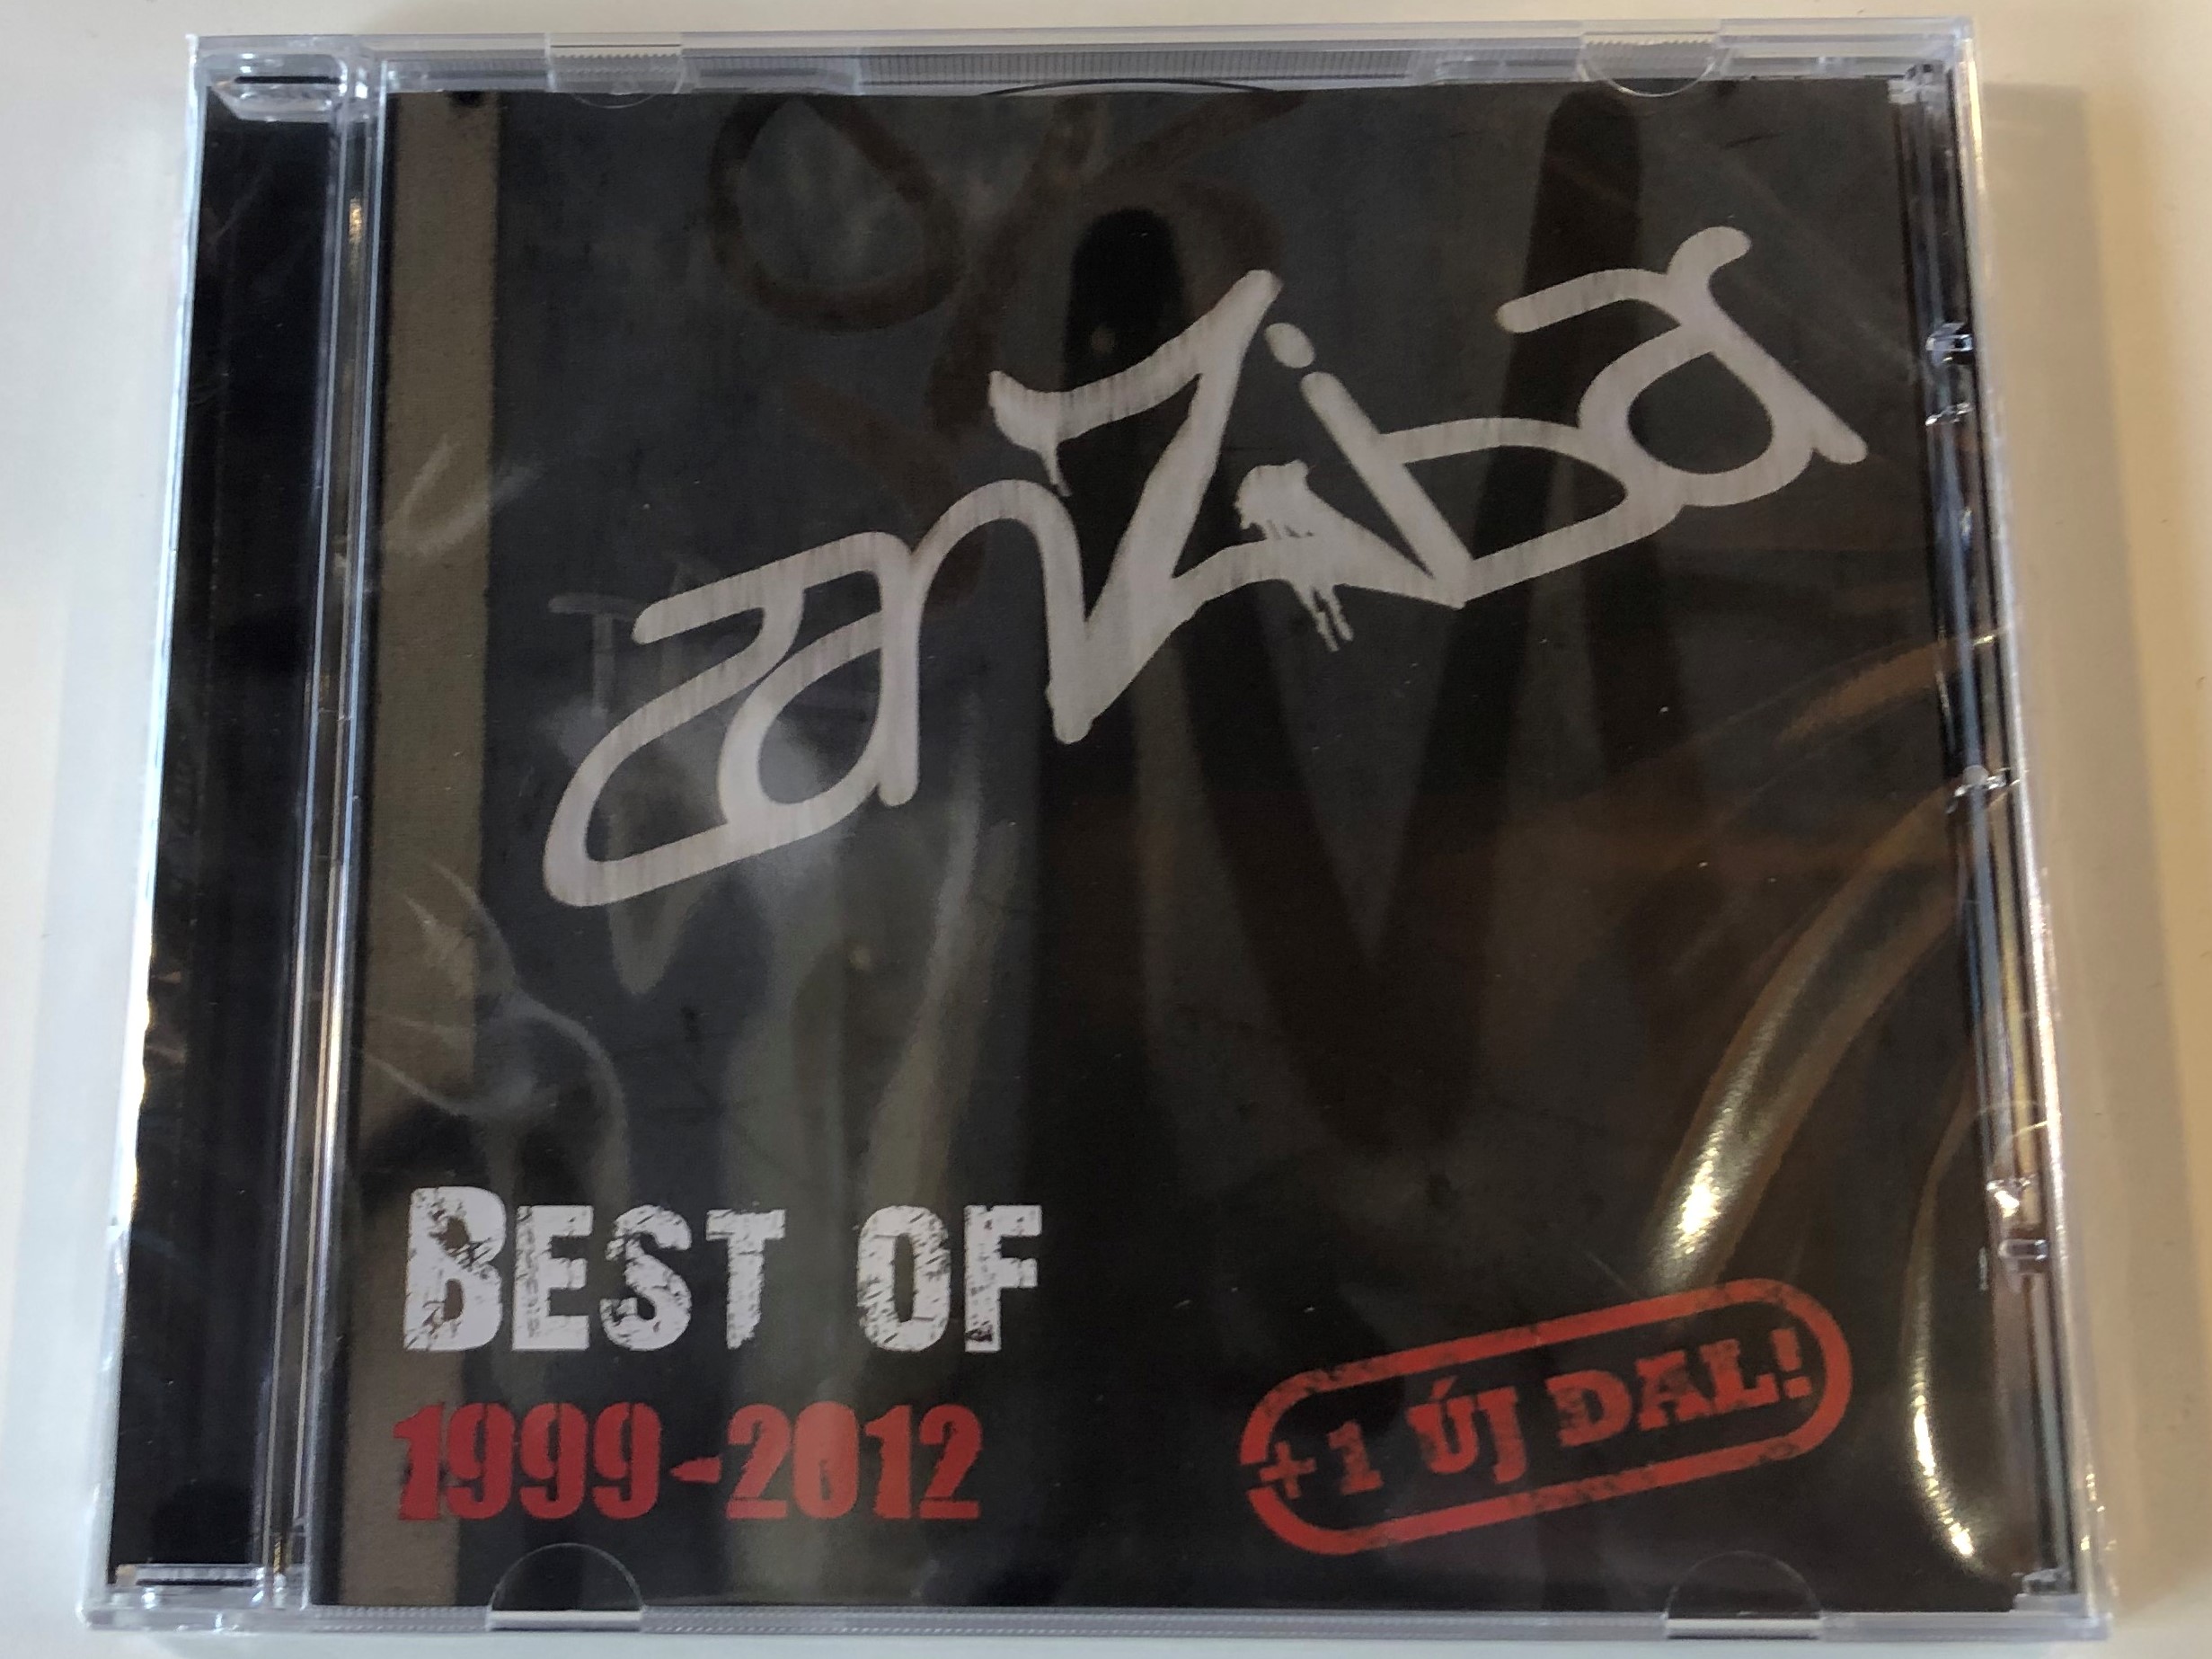 zanzibar-best-of-1999-2012-emi-audio-cd-2012-6369752-1-.jpg